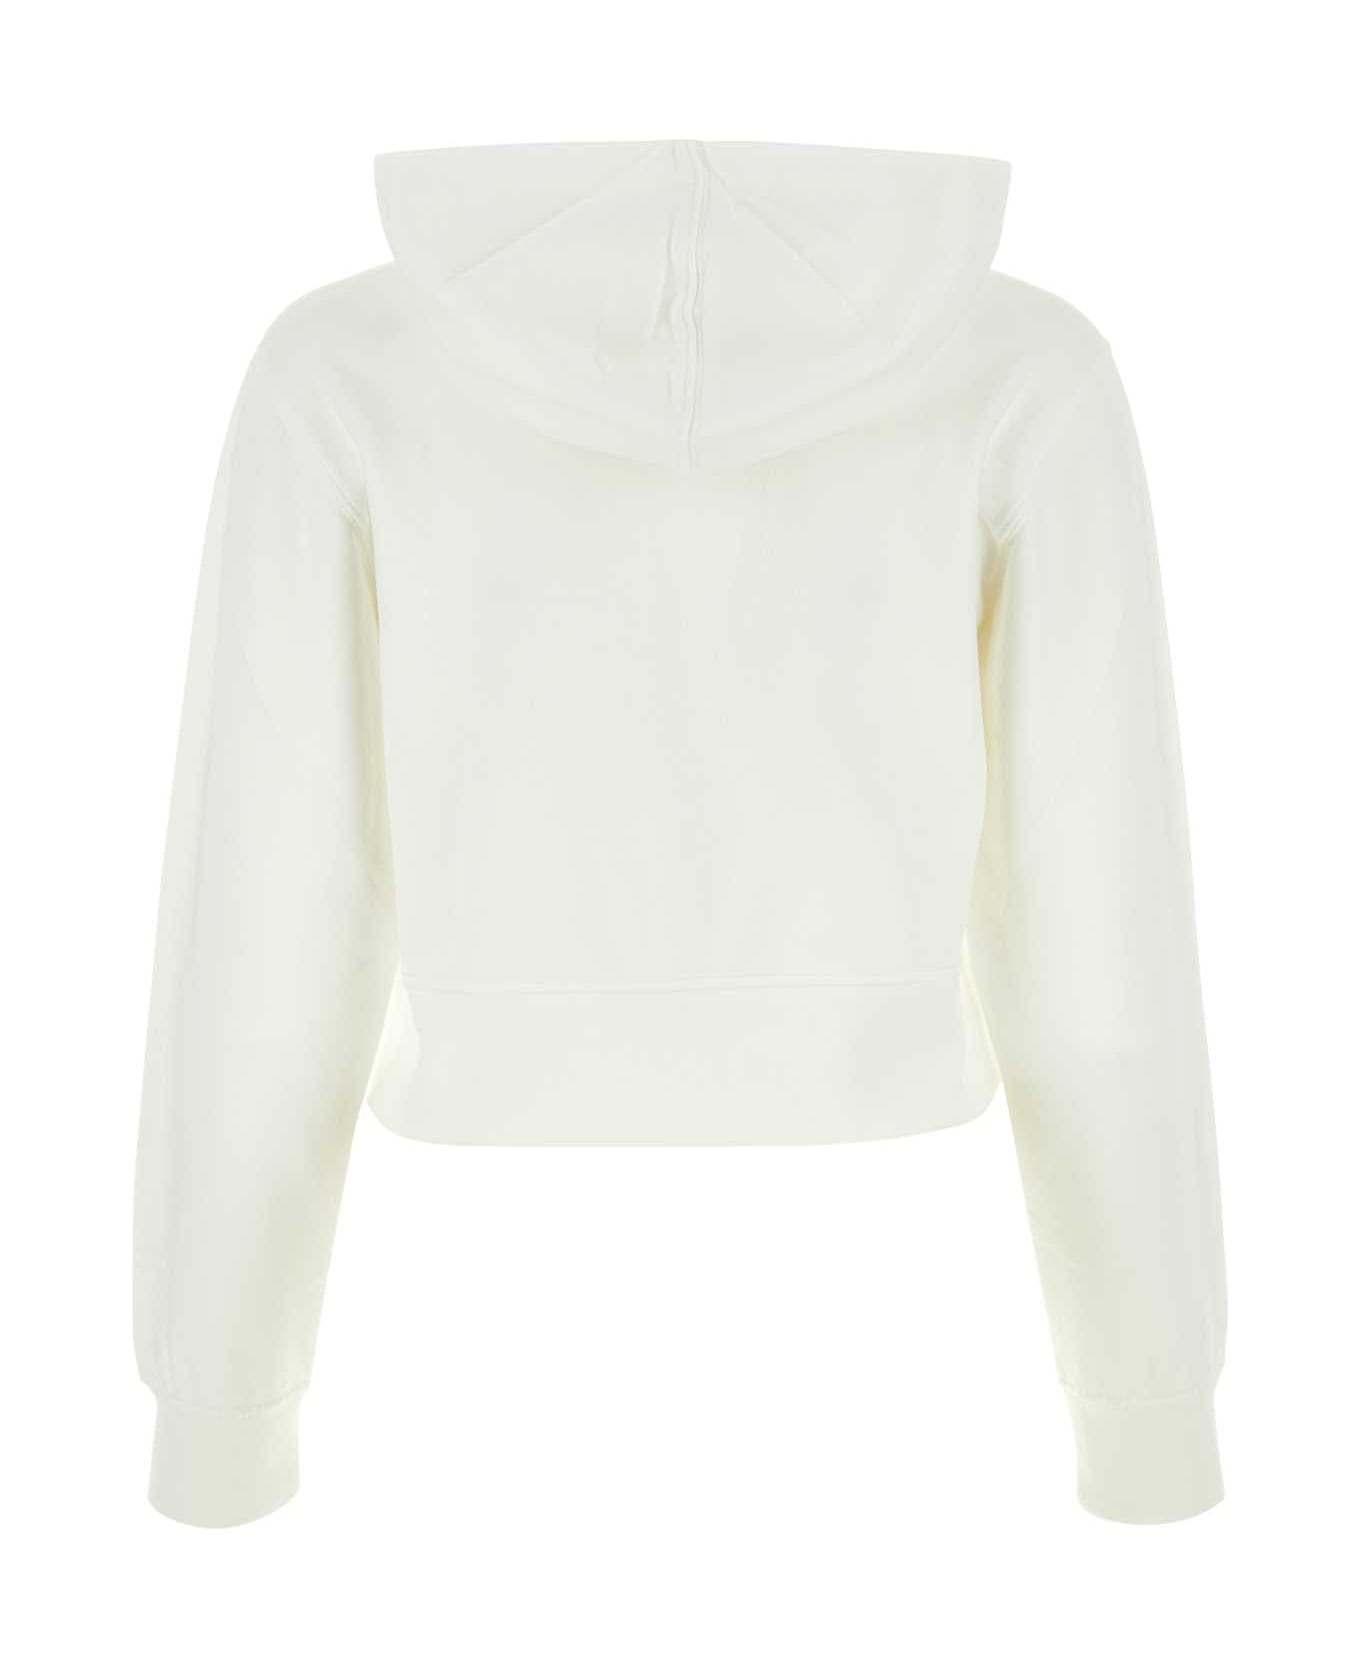 Palm Angels White Cotton Sweatshirt - OFFWHITE フリース